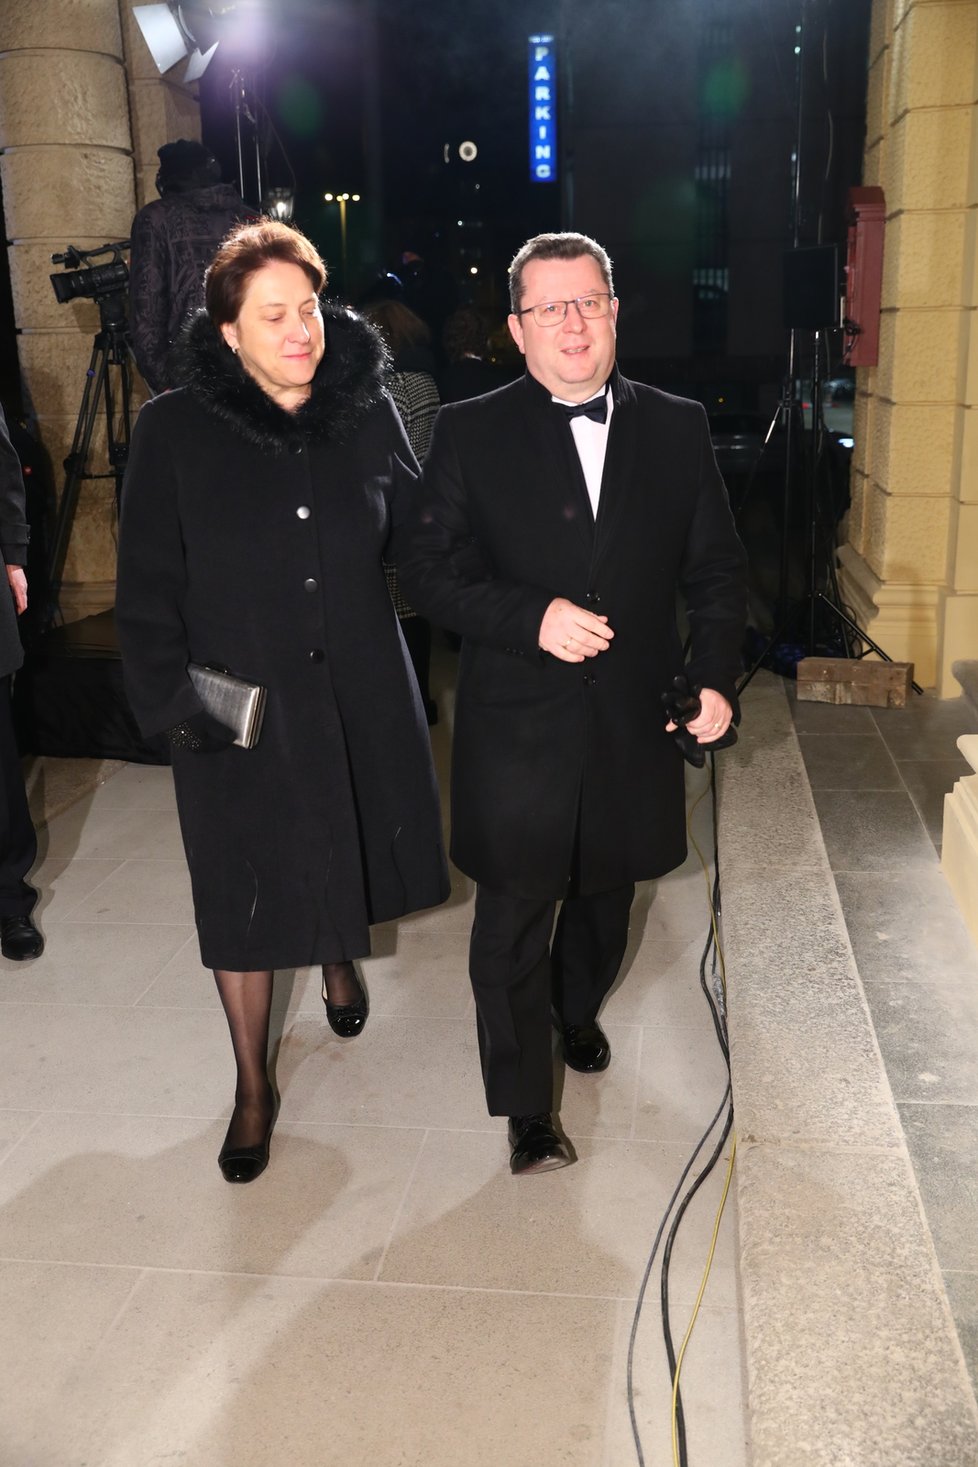 Exministr kultury Antonín Staněk (ČSSD) s manželkou před Státní operou (5. 1. 2020)